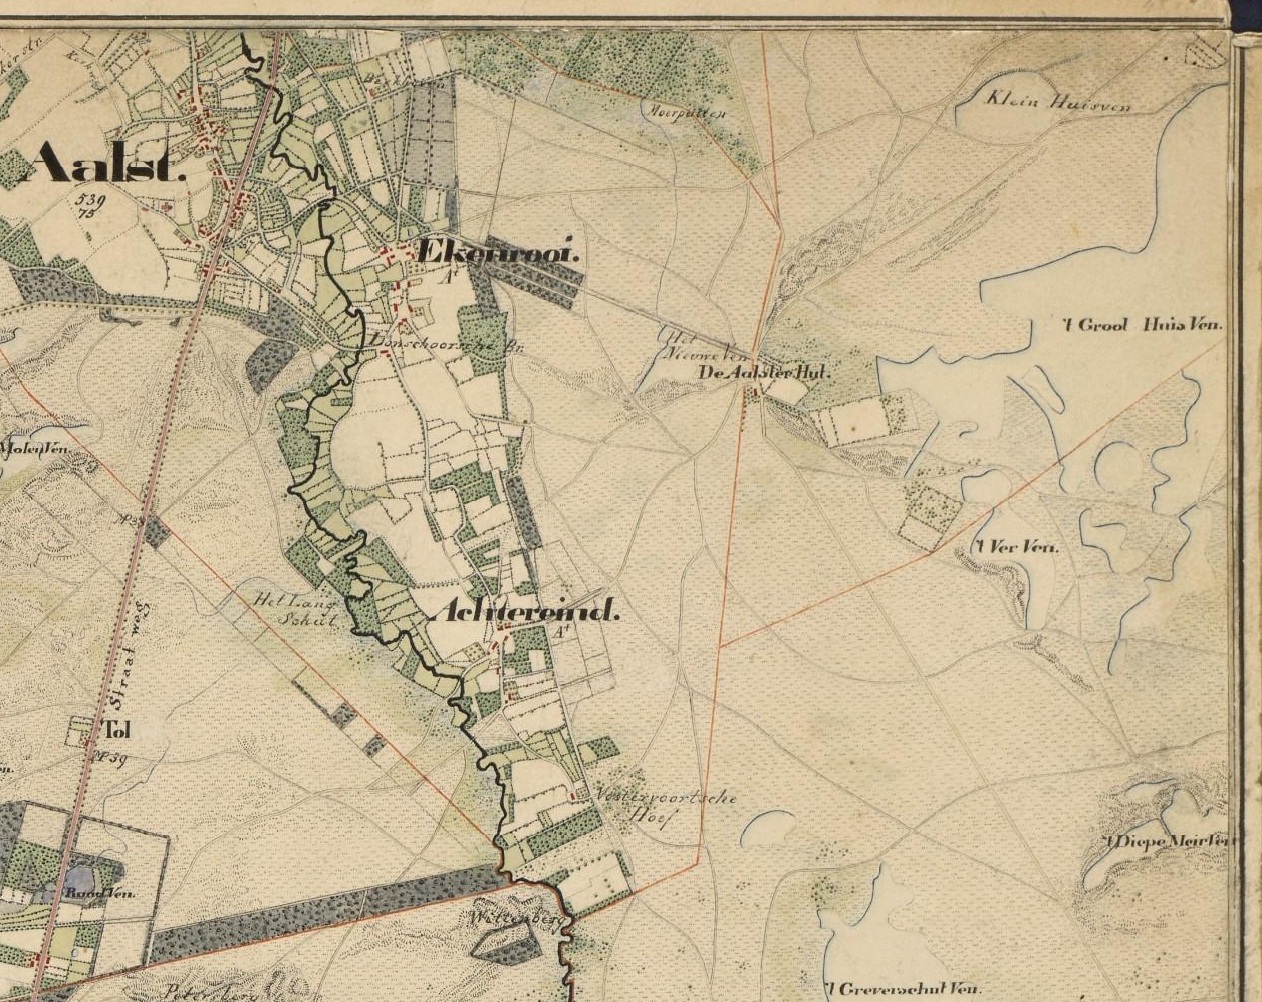 <BR><B>Topografische kaart van de omgeving rond Aalst</B><BR>
(Schuurman, 1837)